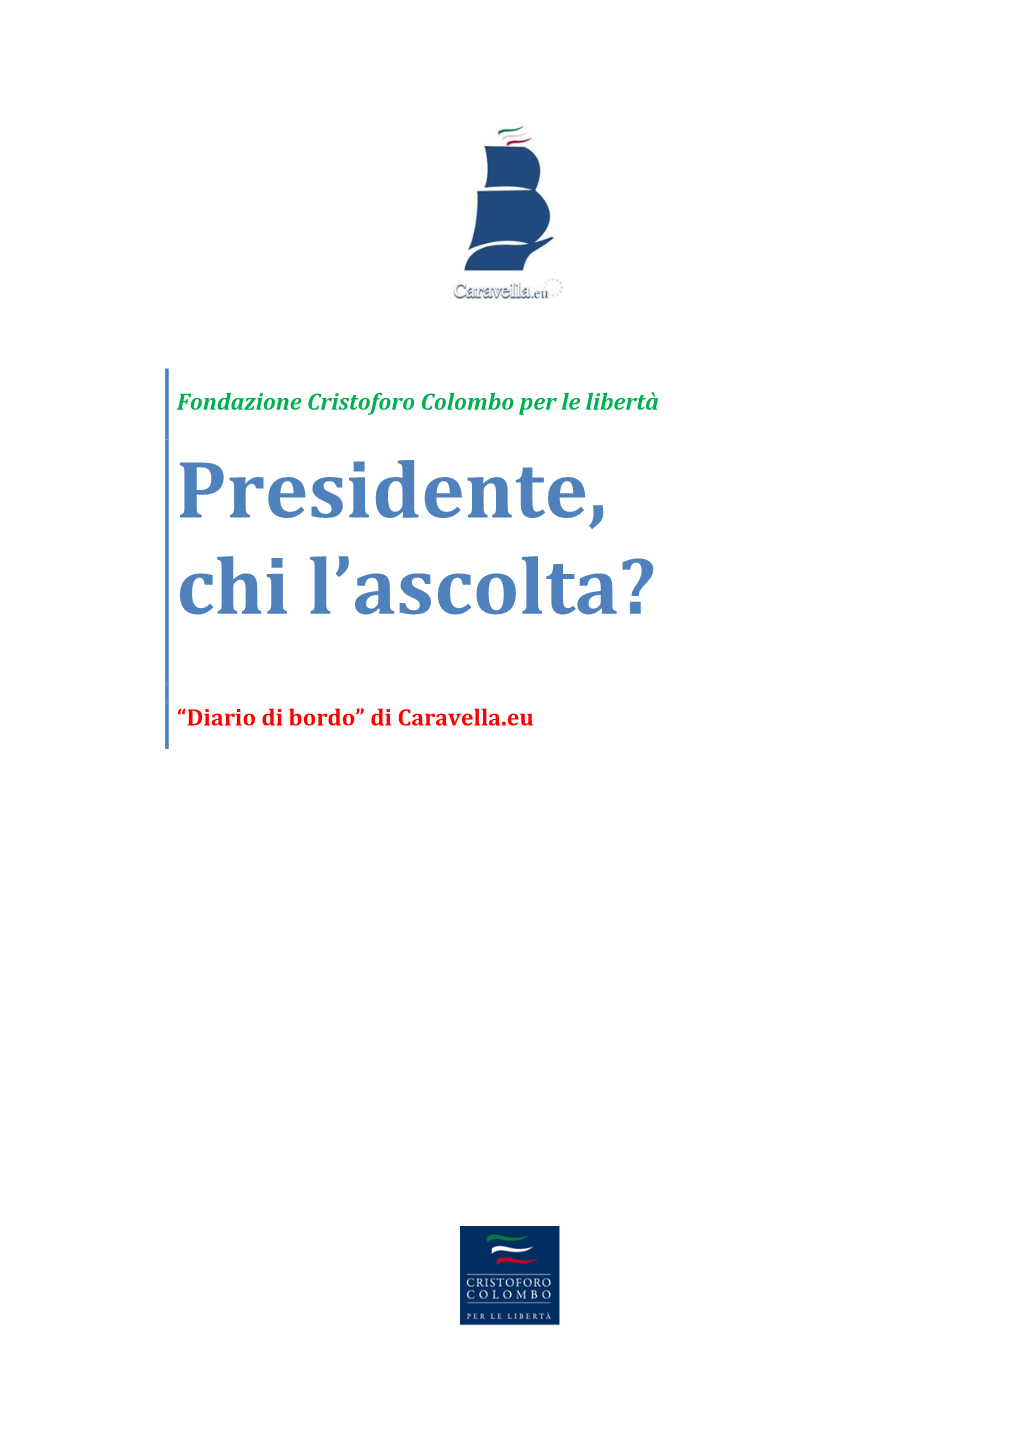 Diario Di Bordo N. 9 Di Caravella.Eu – – Presidente, Chi L’Ascolta?